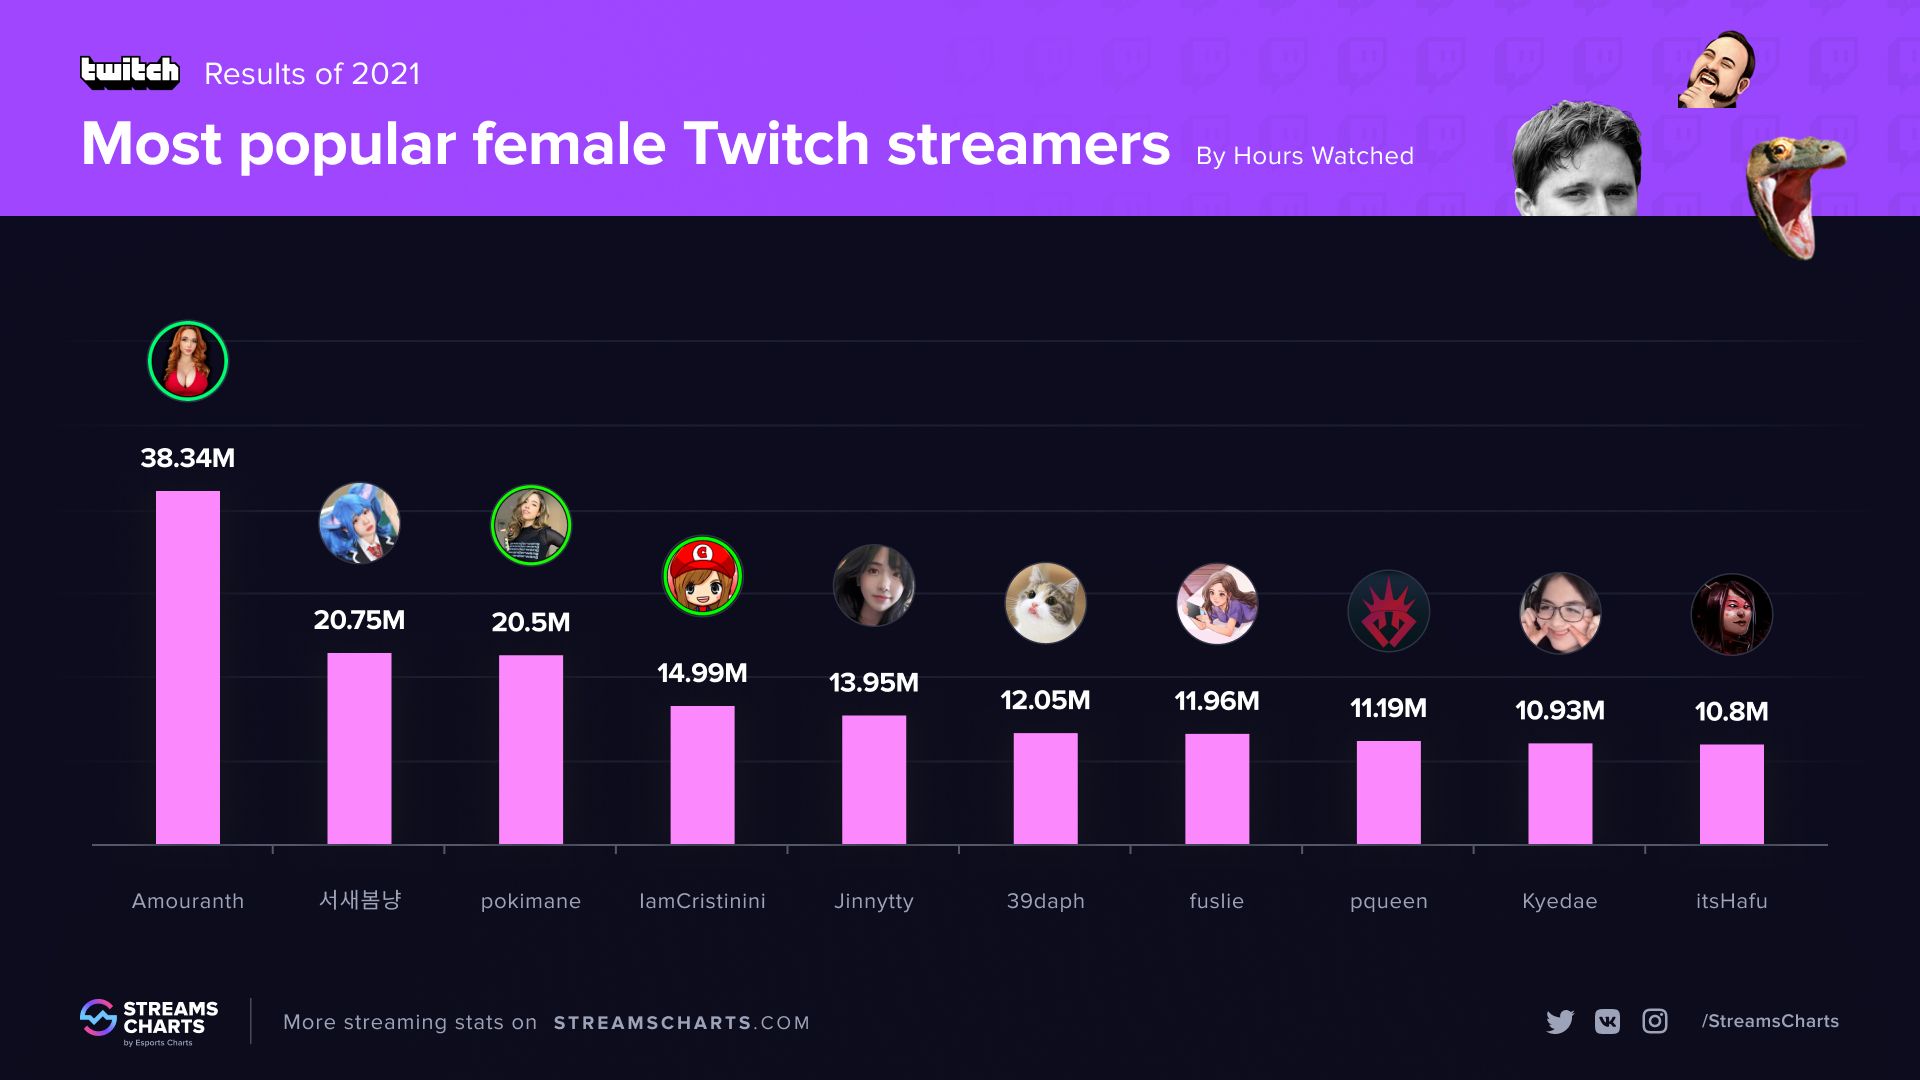 Рейтинг девушек-стримеров на Twitch в 2021 году. Источник: Streams Charts